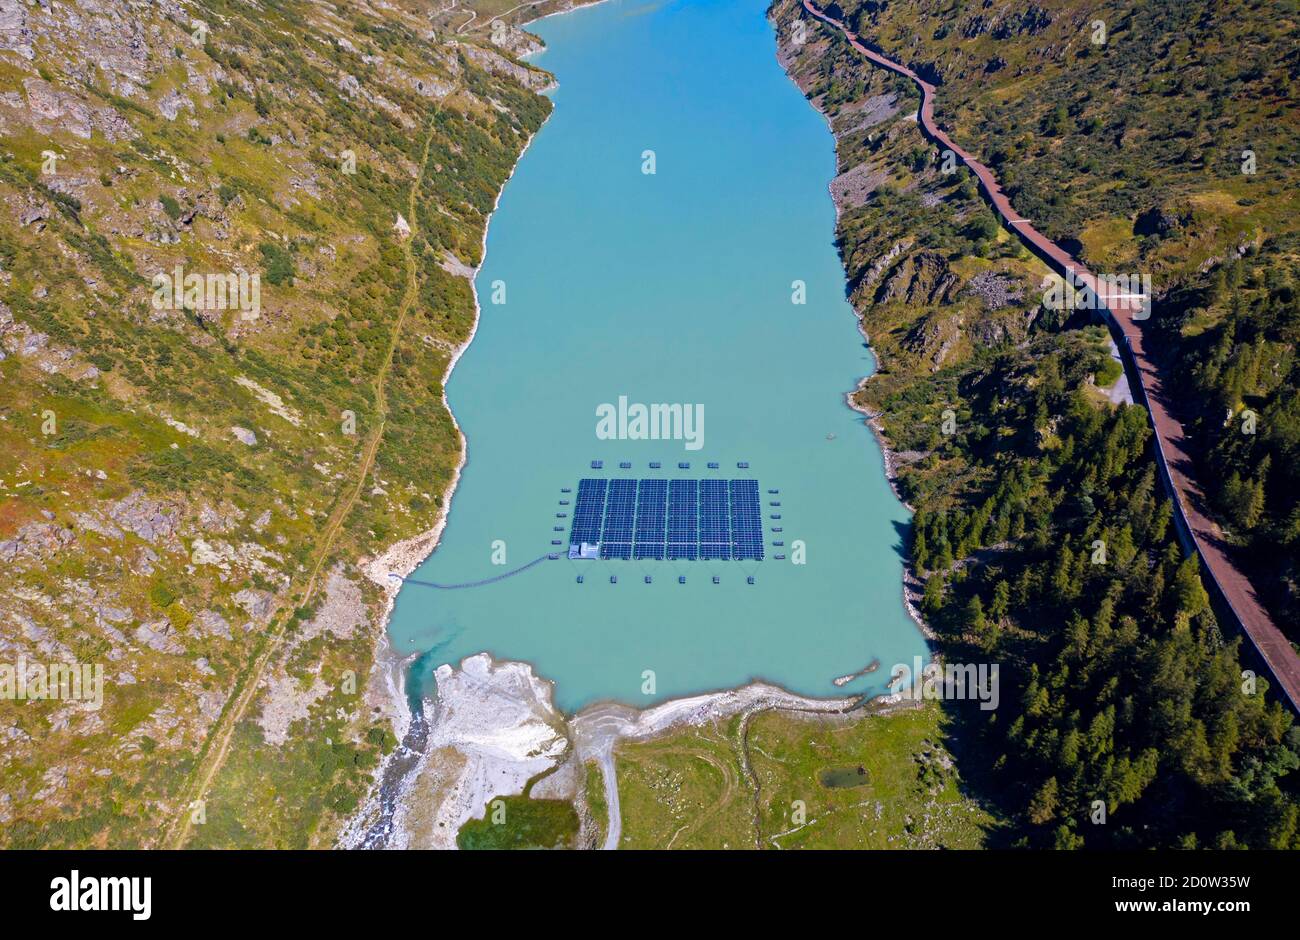 Capteurs solaires d'une centrale solaire flottant sur le lac de montagne Lac des Toules, Bourg-St-Pierre, Valais, Suisse, Europe Banque D'Images